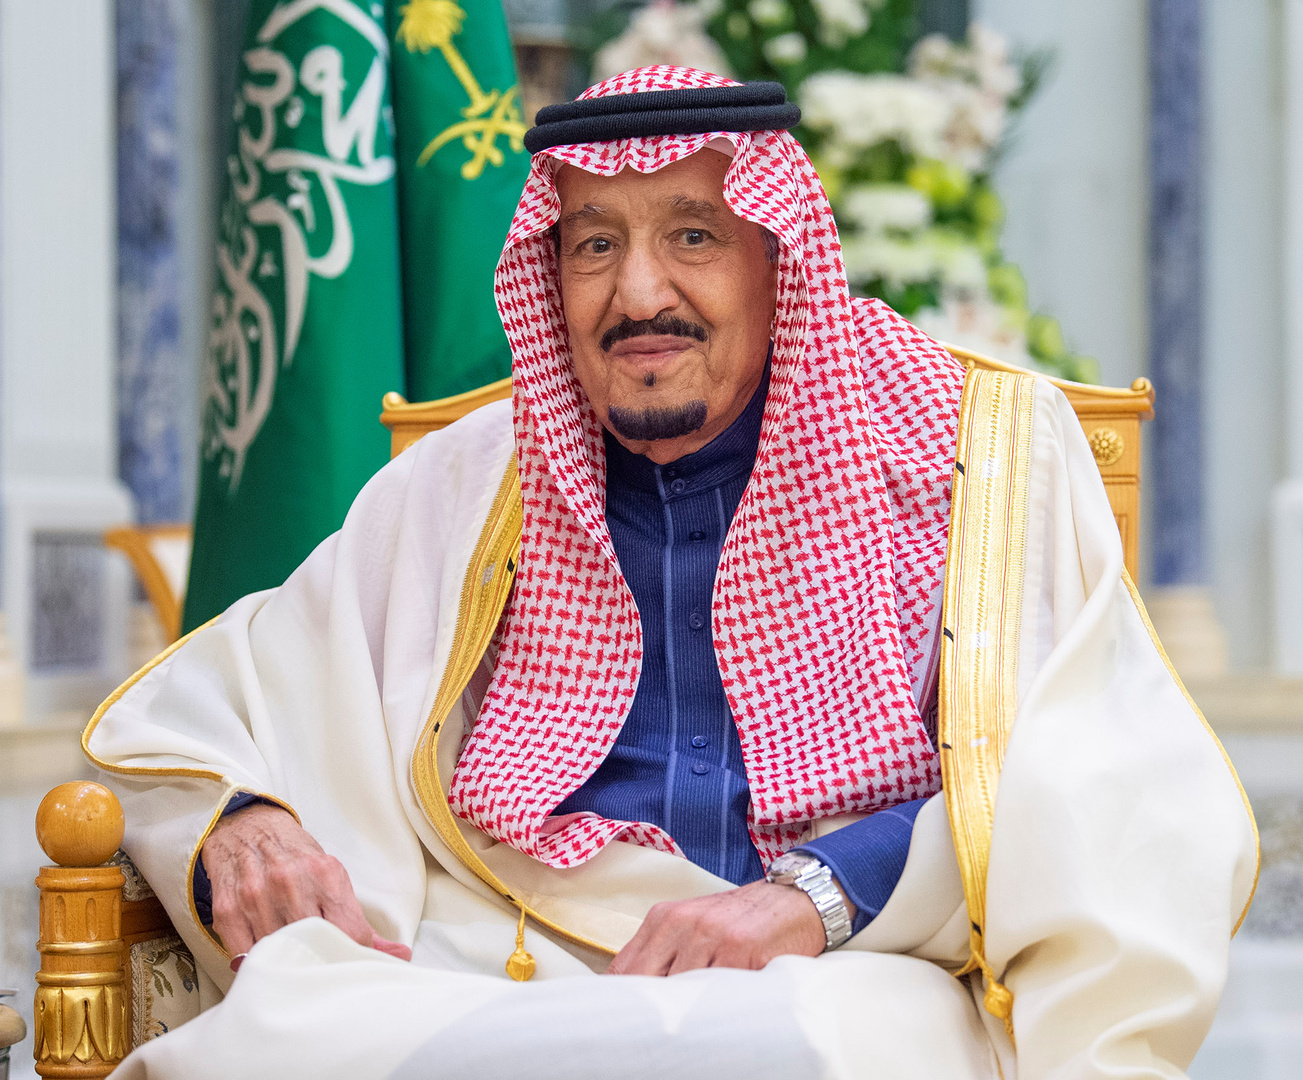 الملك سلمان بن عبد العزيز يصدر 12 قراراً جديداً بعد اجتماعه بمجلس الوزراء